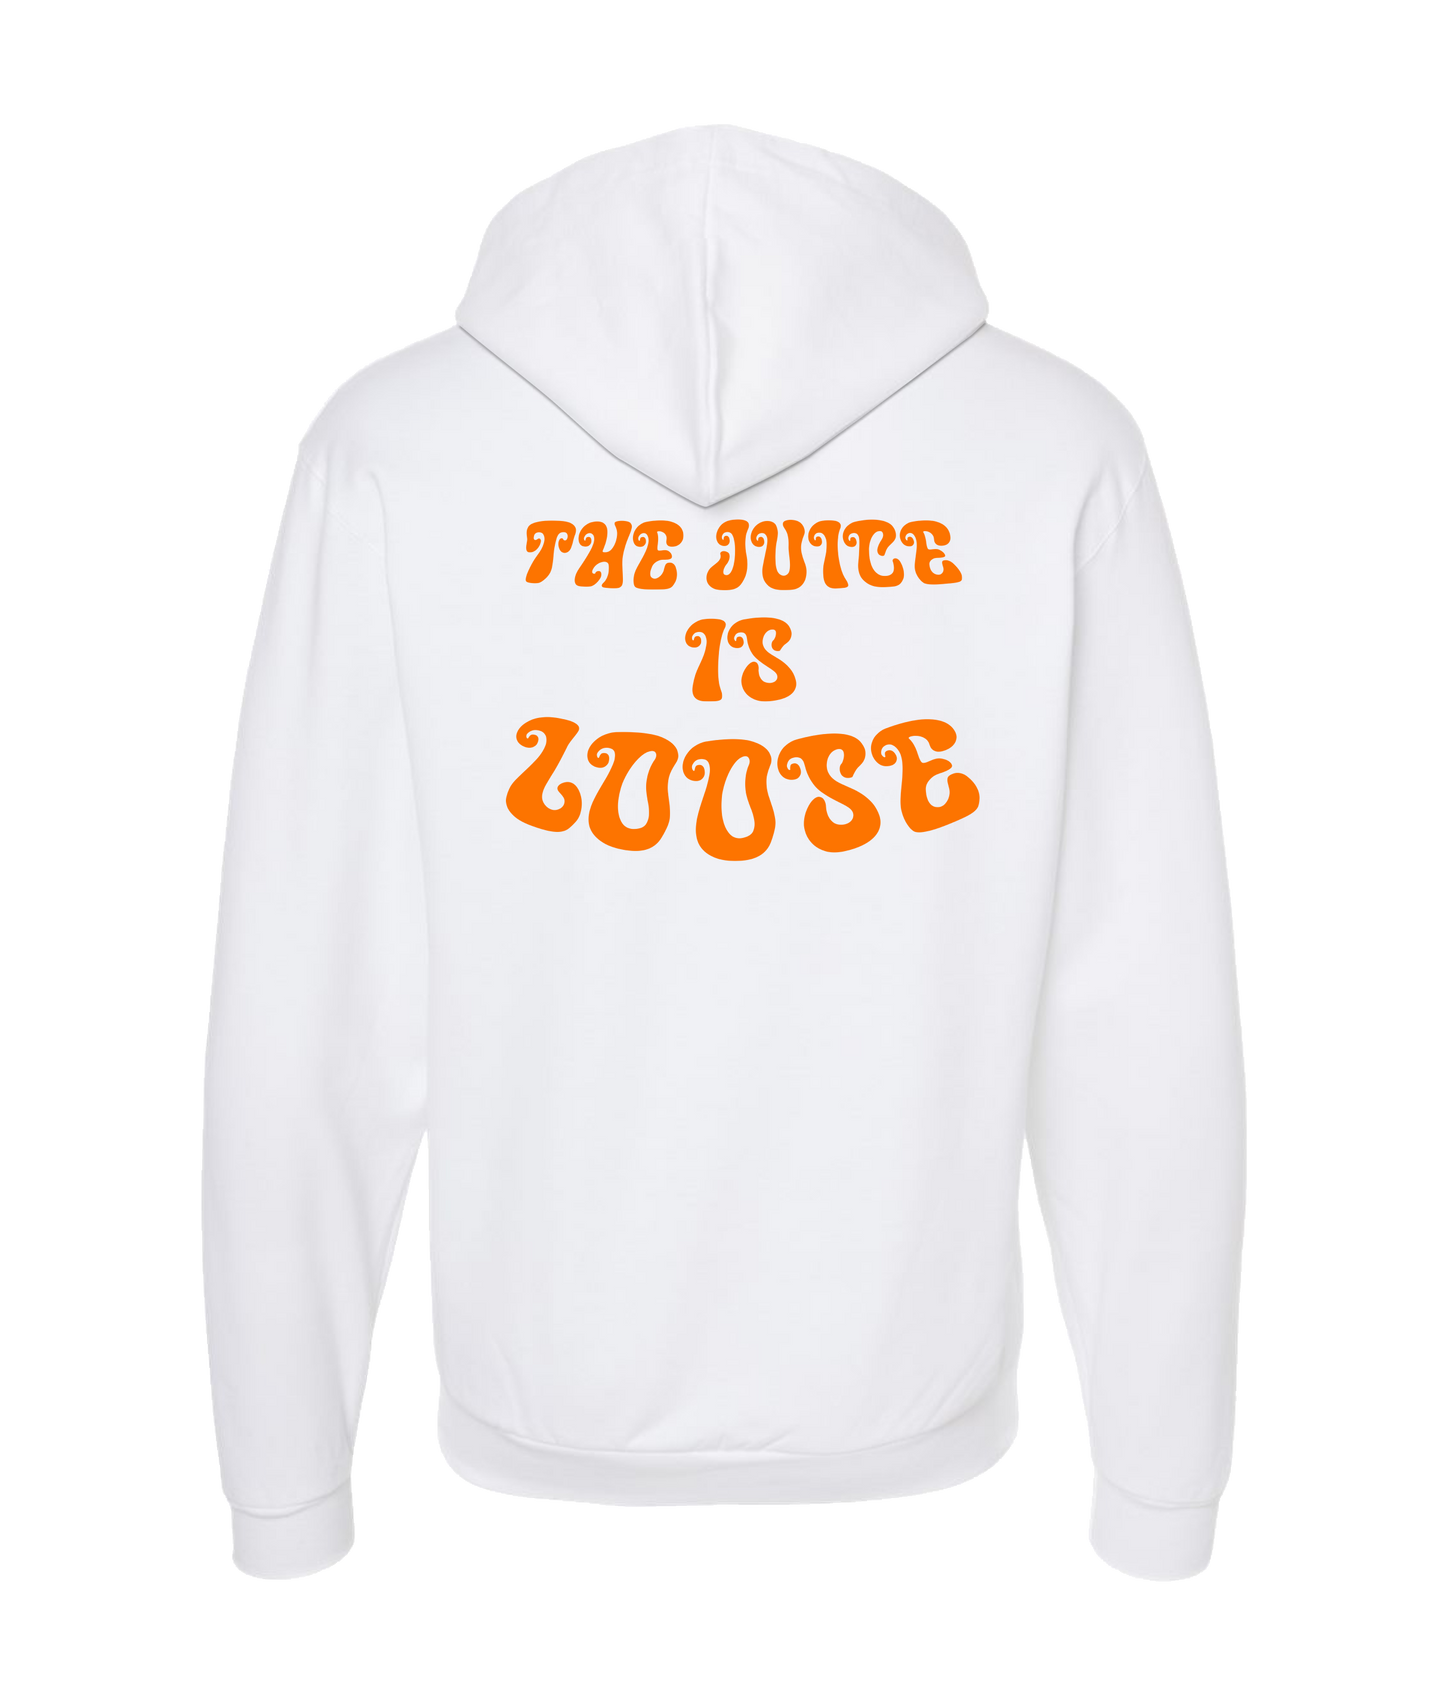 Orange Juice - The Juice is Loose - White Zip Up Hoodie